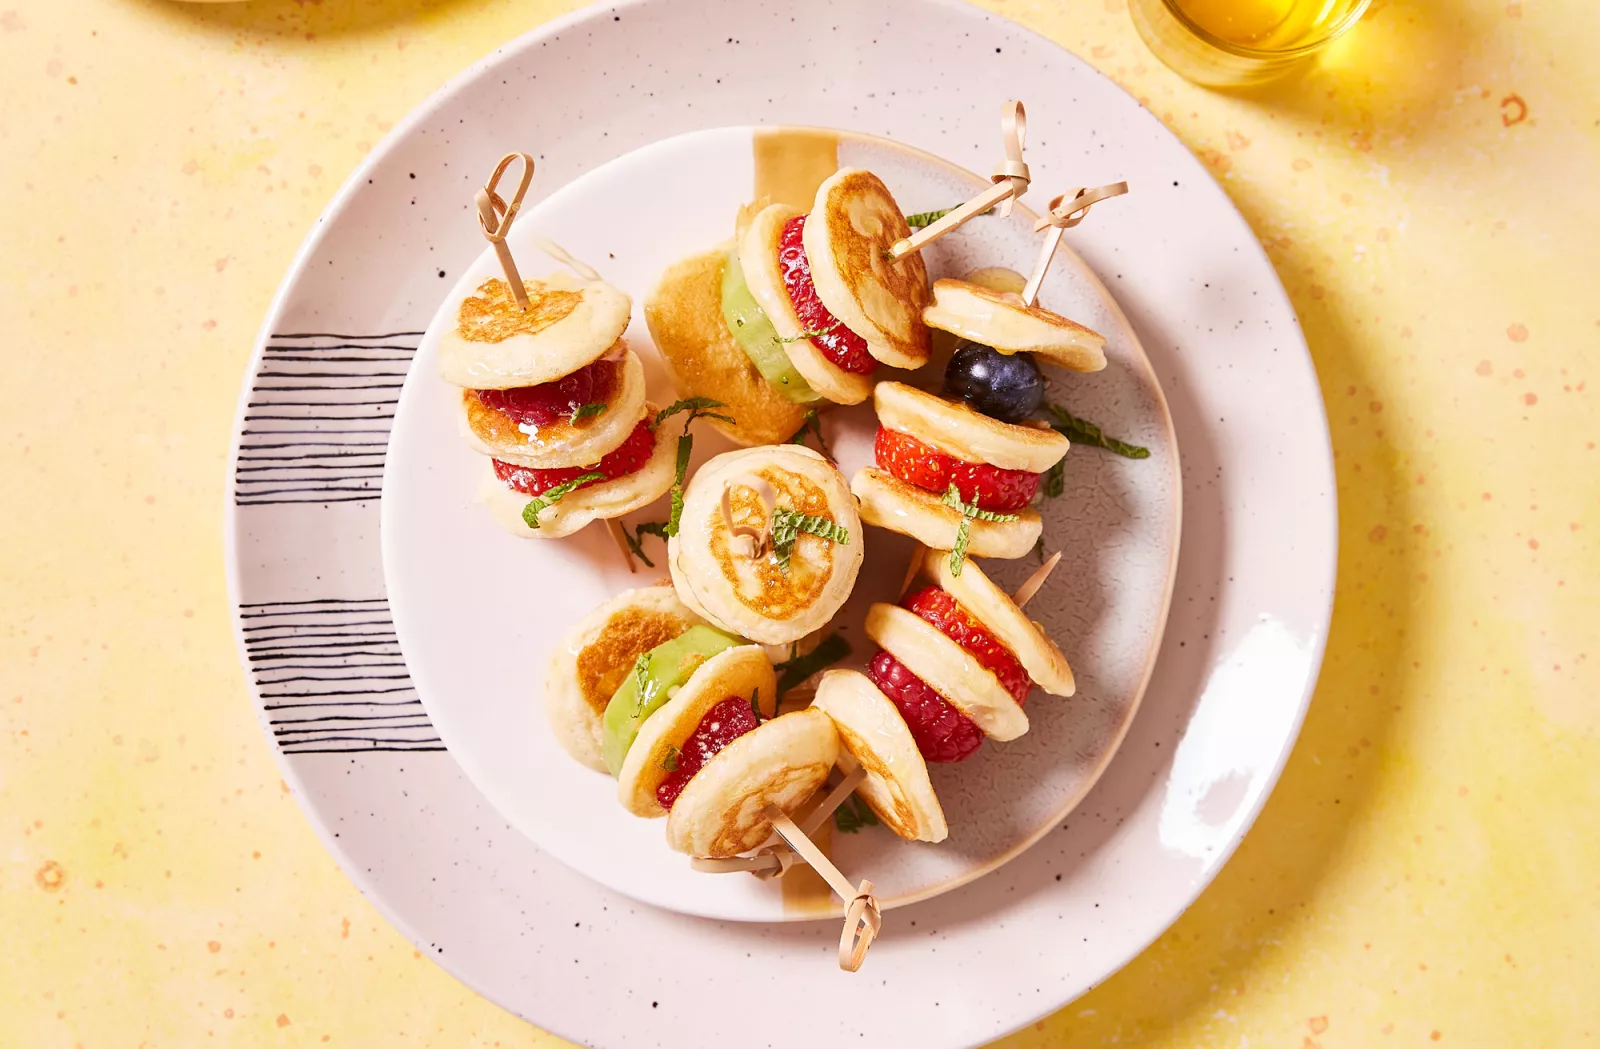 Brochettes de mini pancakes y frutas, una rica opción de postre para estas fiestas.